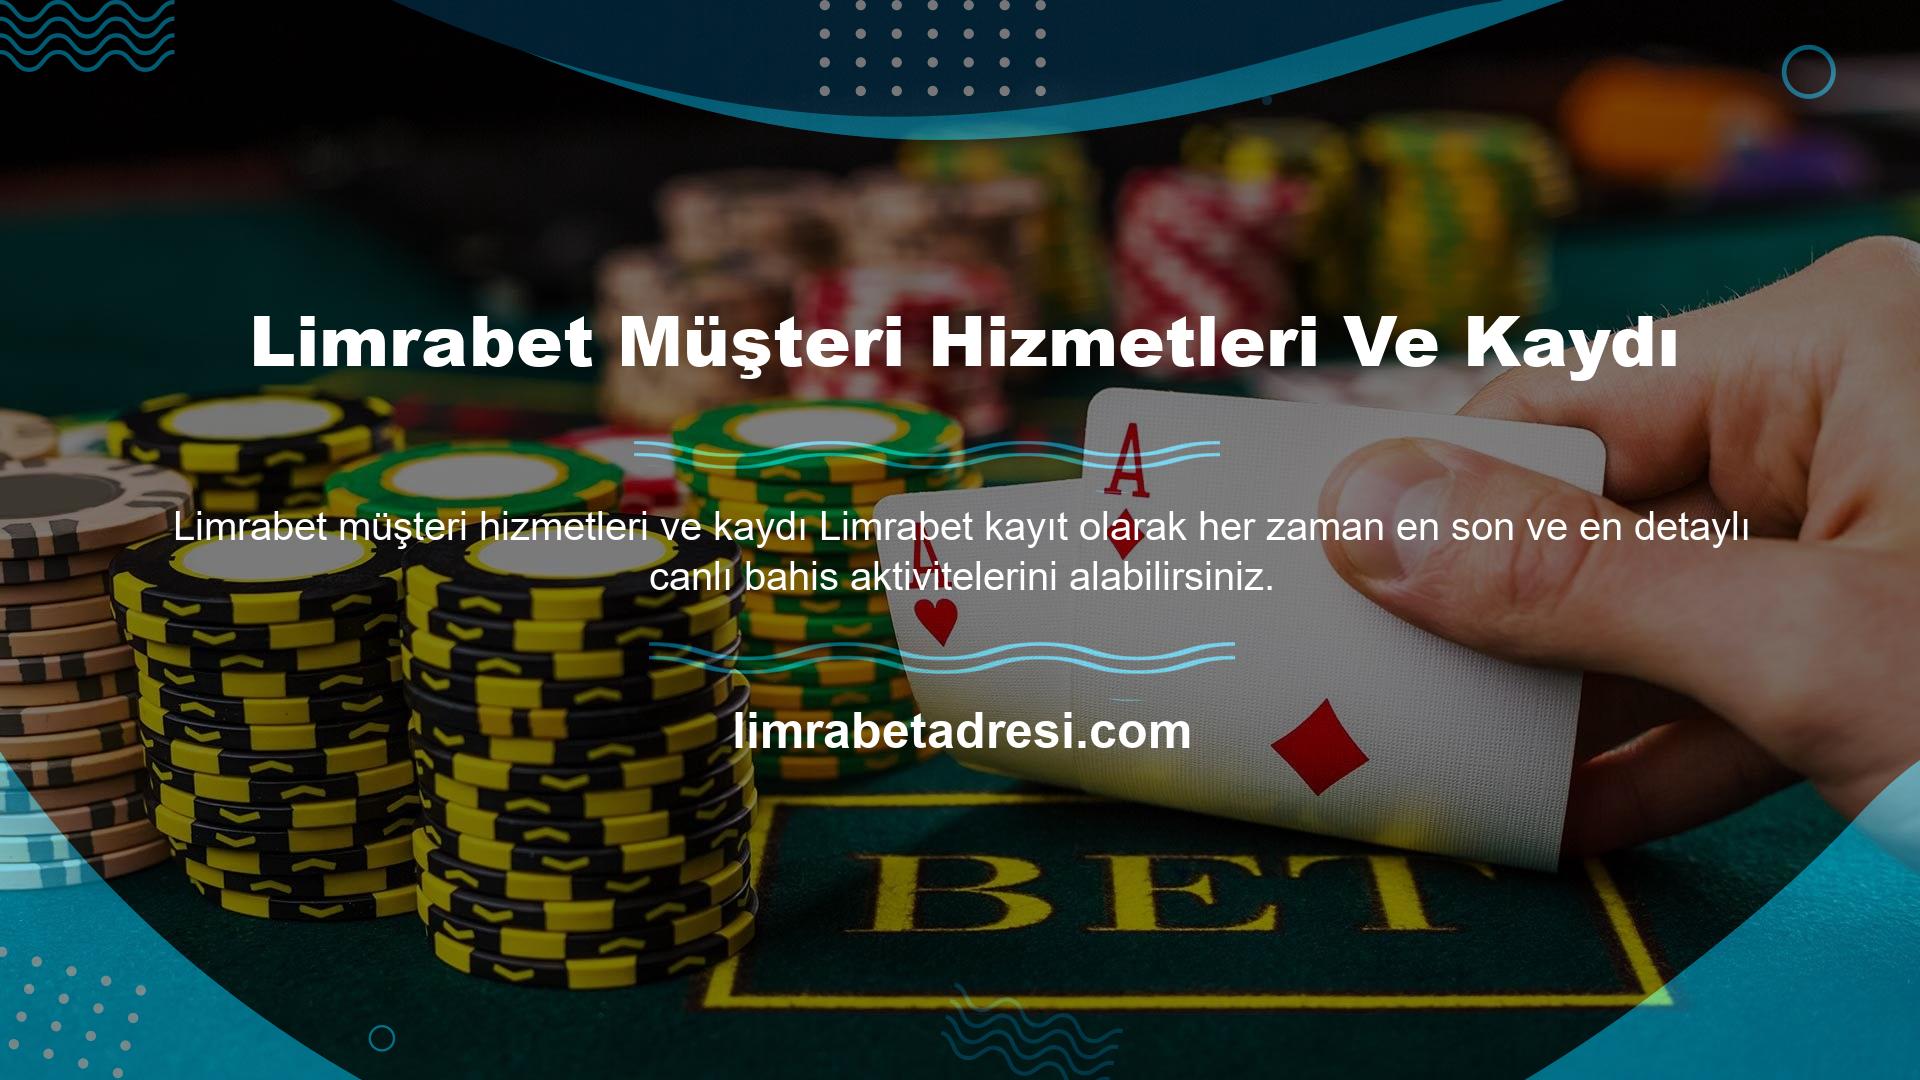 Limrabet, yenilikçi ve planlı bir offshore casino sitesi olarak daha yeni bir yapıda ilerliyor